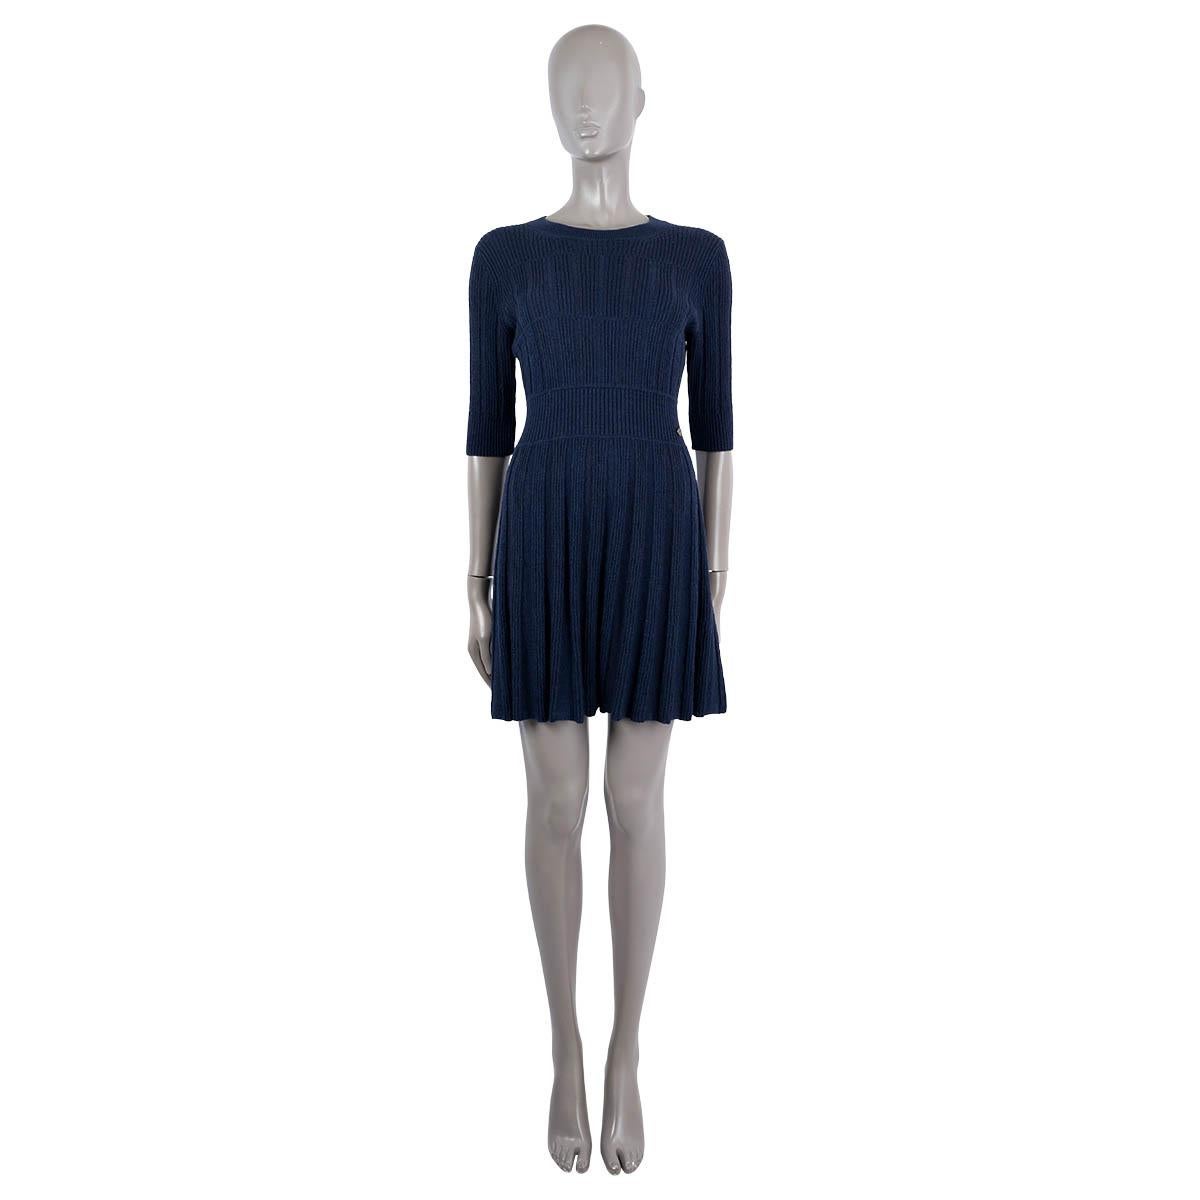 100% authentique Chanel robe texturée évasée en tricot côtelé bleu marine en alpaga (67%) et laine (33%) - veuillez noter que l'étiquette de contenu est manquante. Il est doté de manches courtes et d'une bande de taille avec bouton logo. Non doublé.